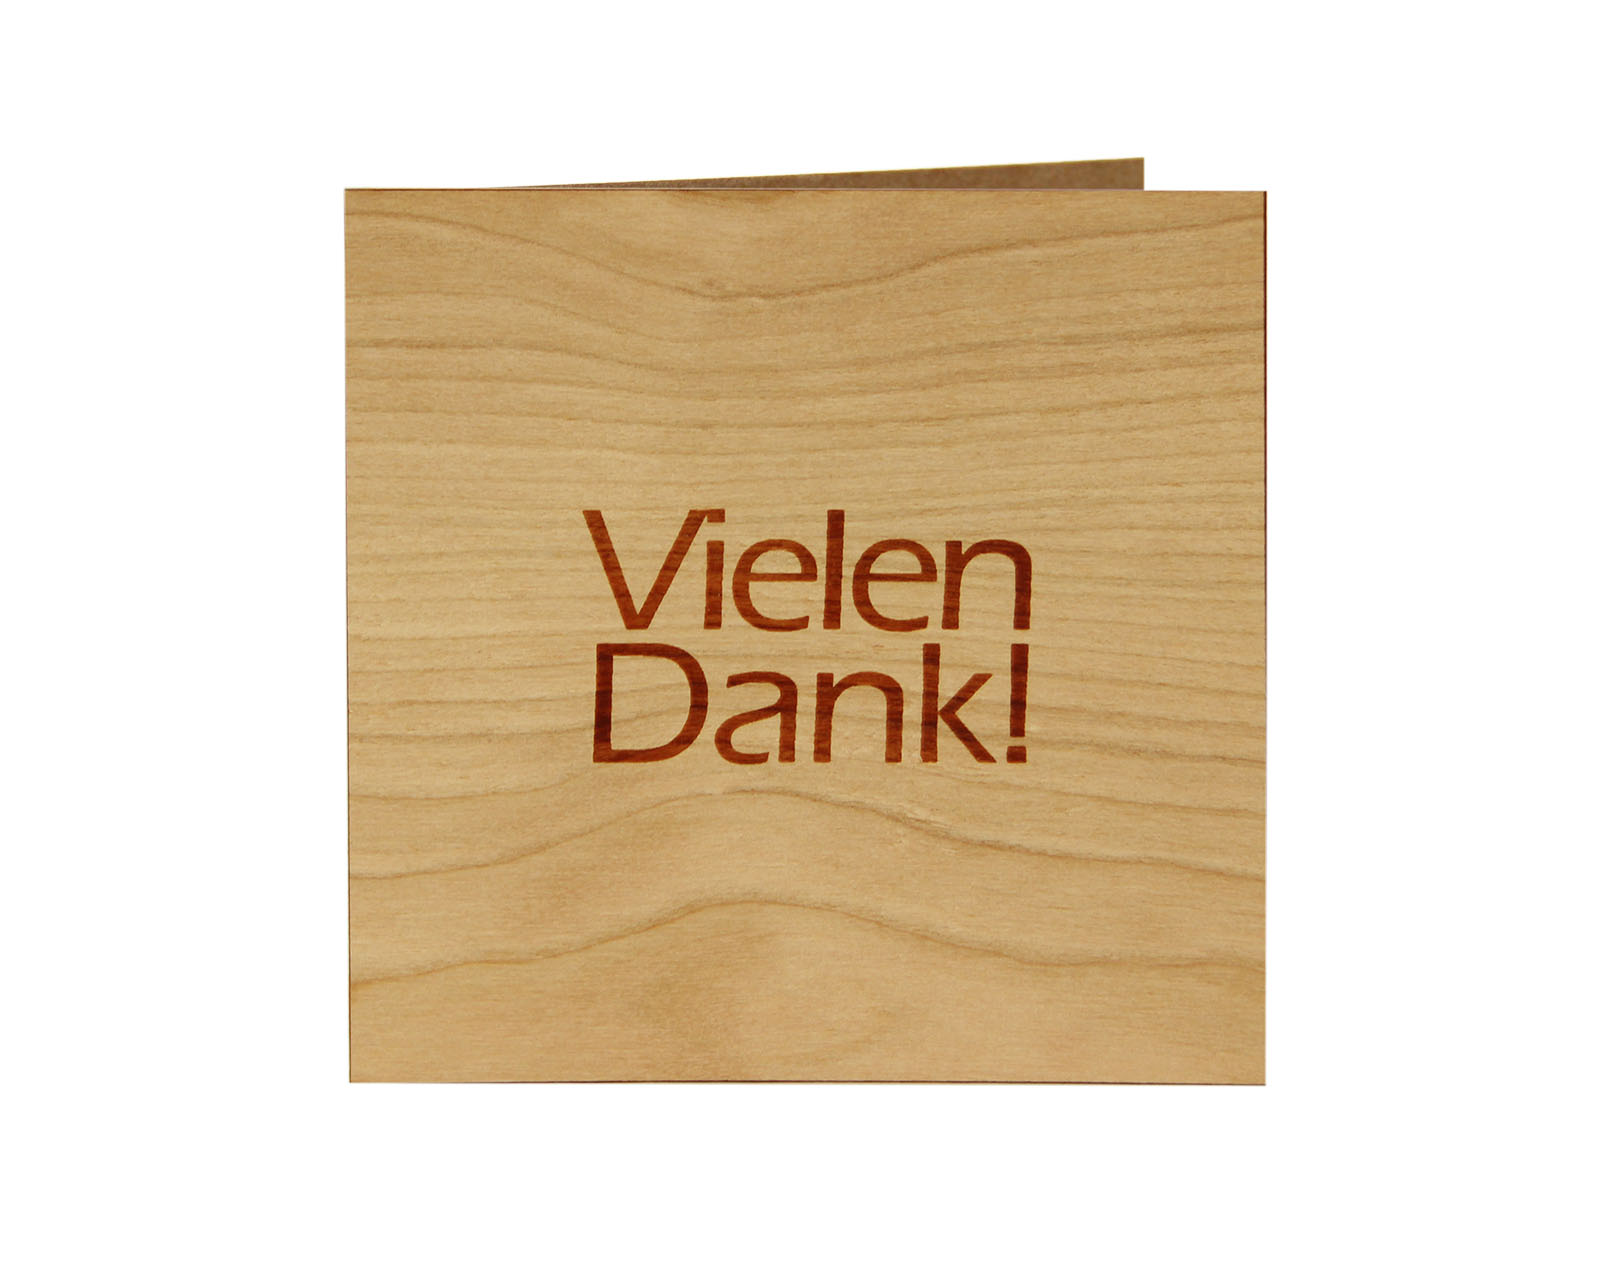 Holzgrusskarten - Holzgrusskarte "Vielen Dank!", Kirsche